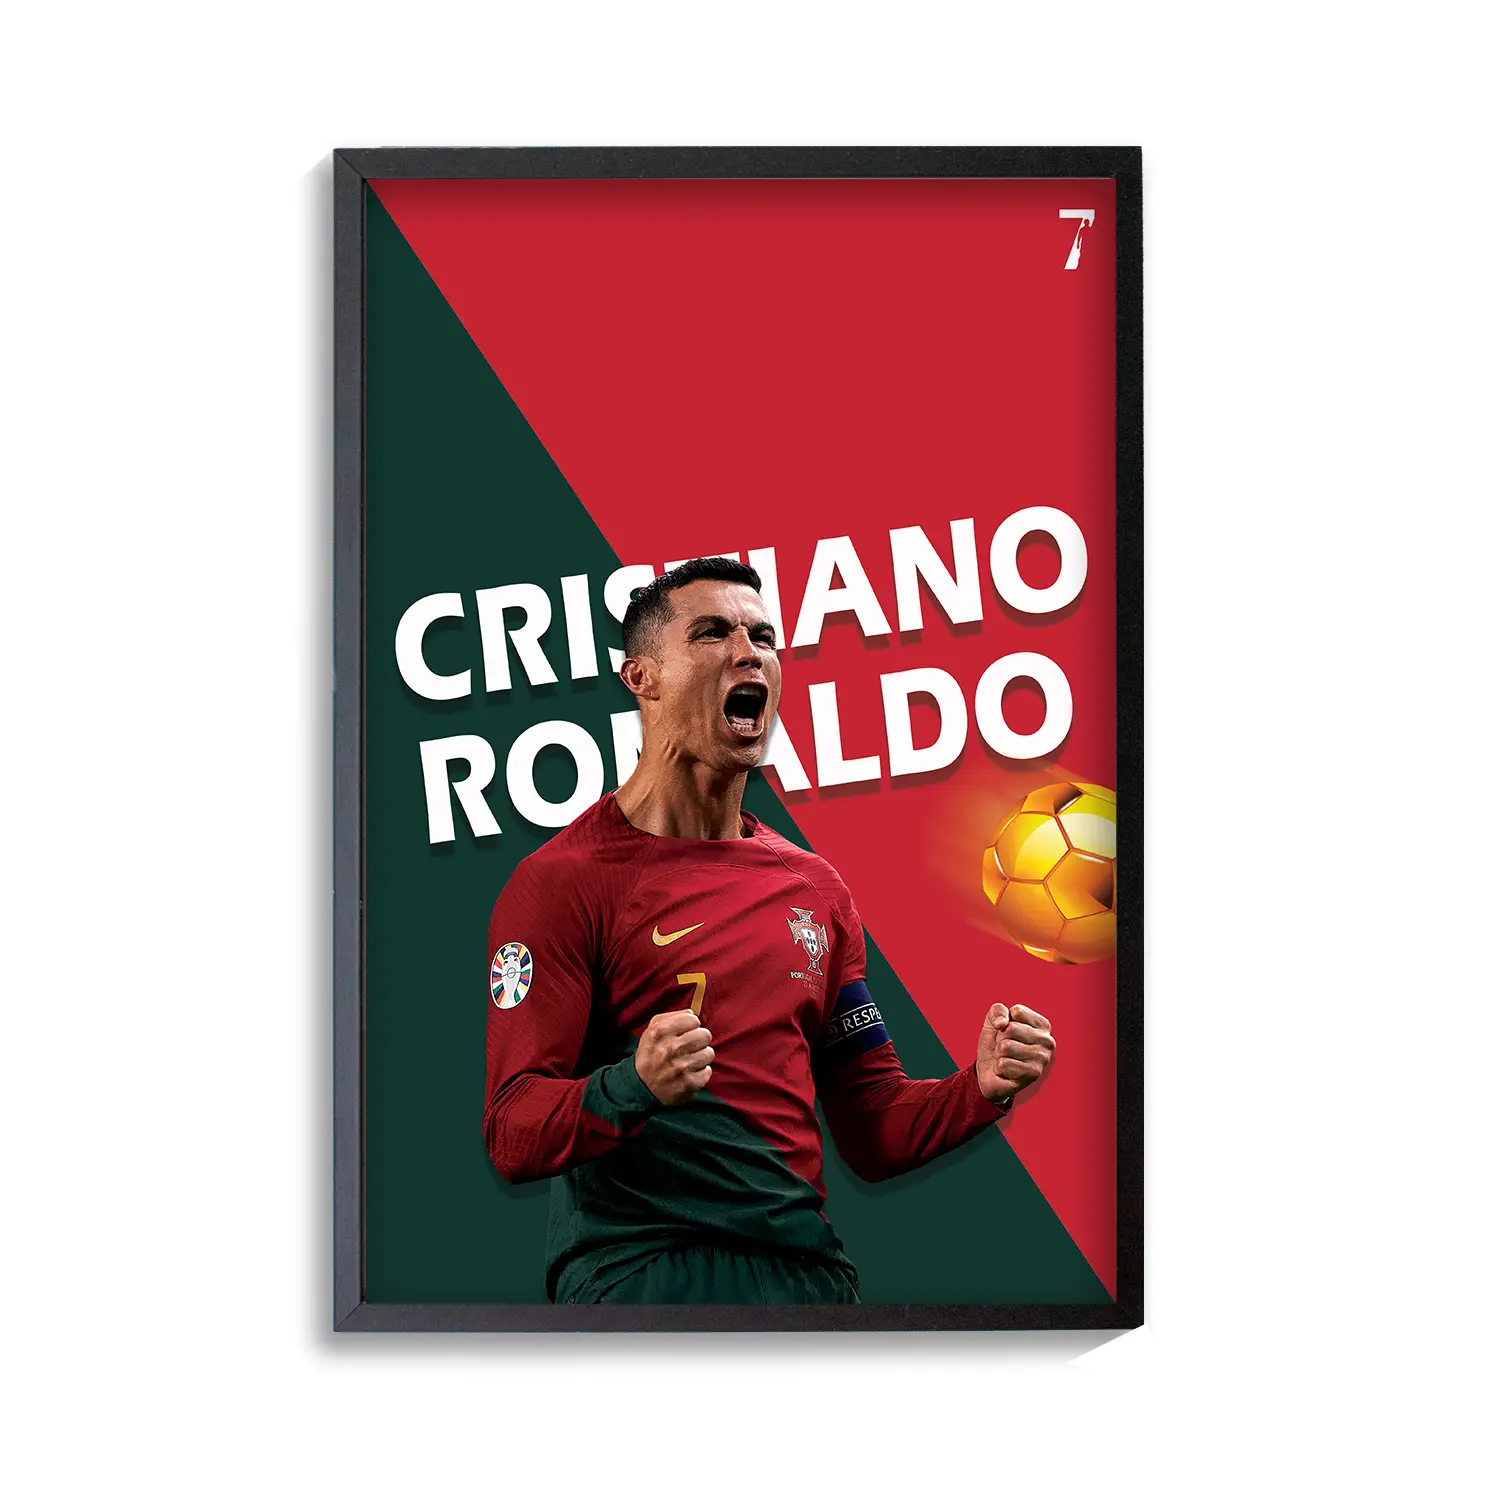 Ronaldo Celebrating Number 7